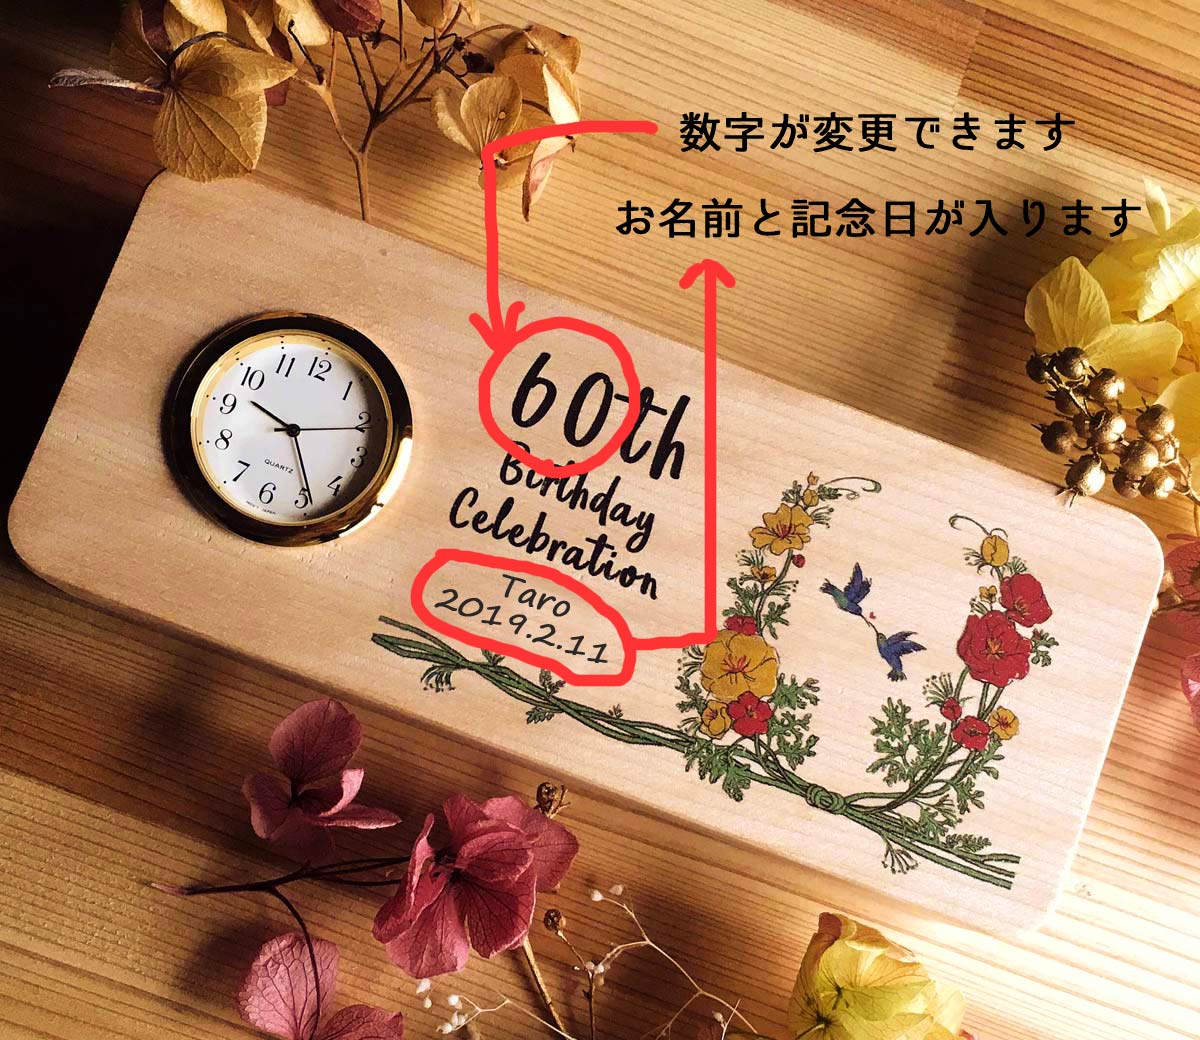 楽天市場 還暦祝い 退職祝い 長寿 古希 喜寿 傘寿 米寿 卒寿 白寿 祝い 喜寿祝い ココロクロック 記念日置時計 還暦祝い 両親へのプレゼント お好きなメッセージ刻印 Seiko 木製 日本製 日本モッキ